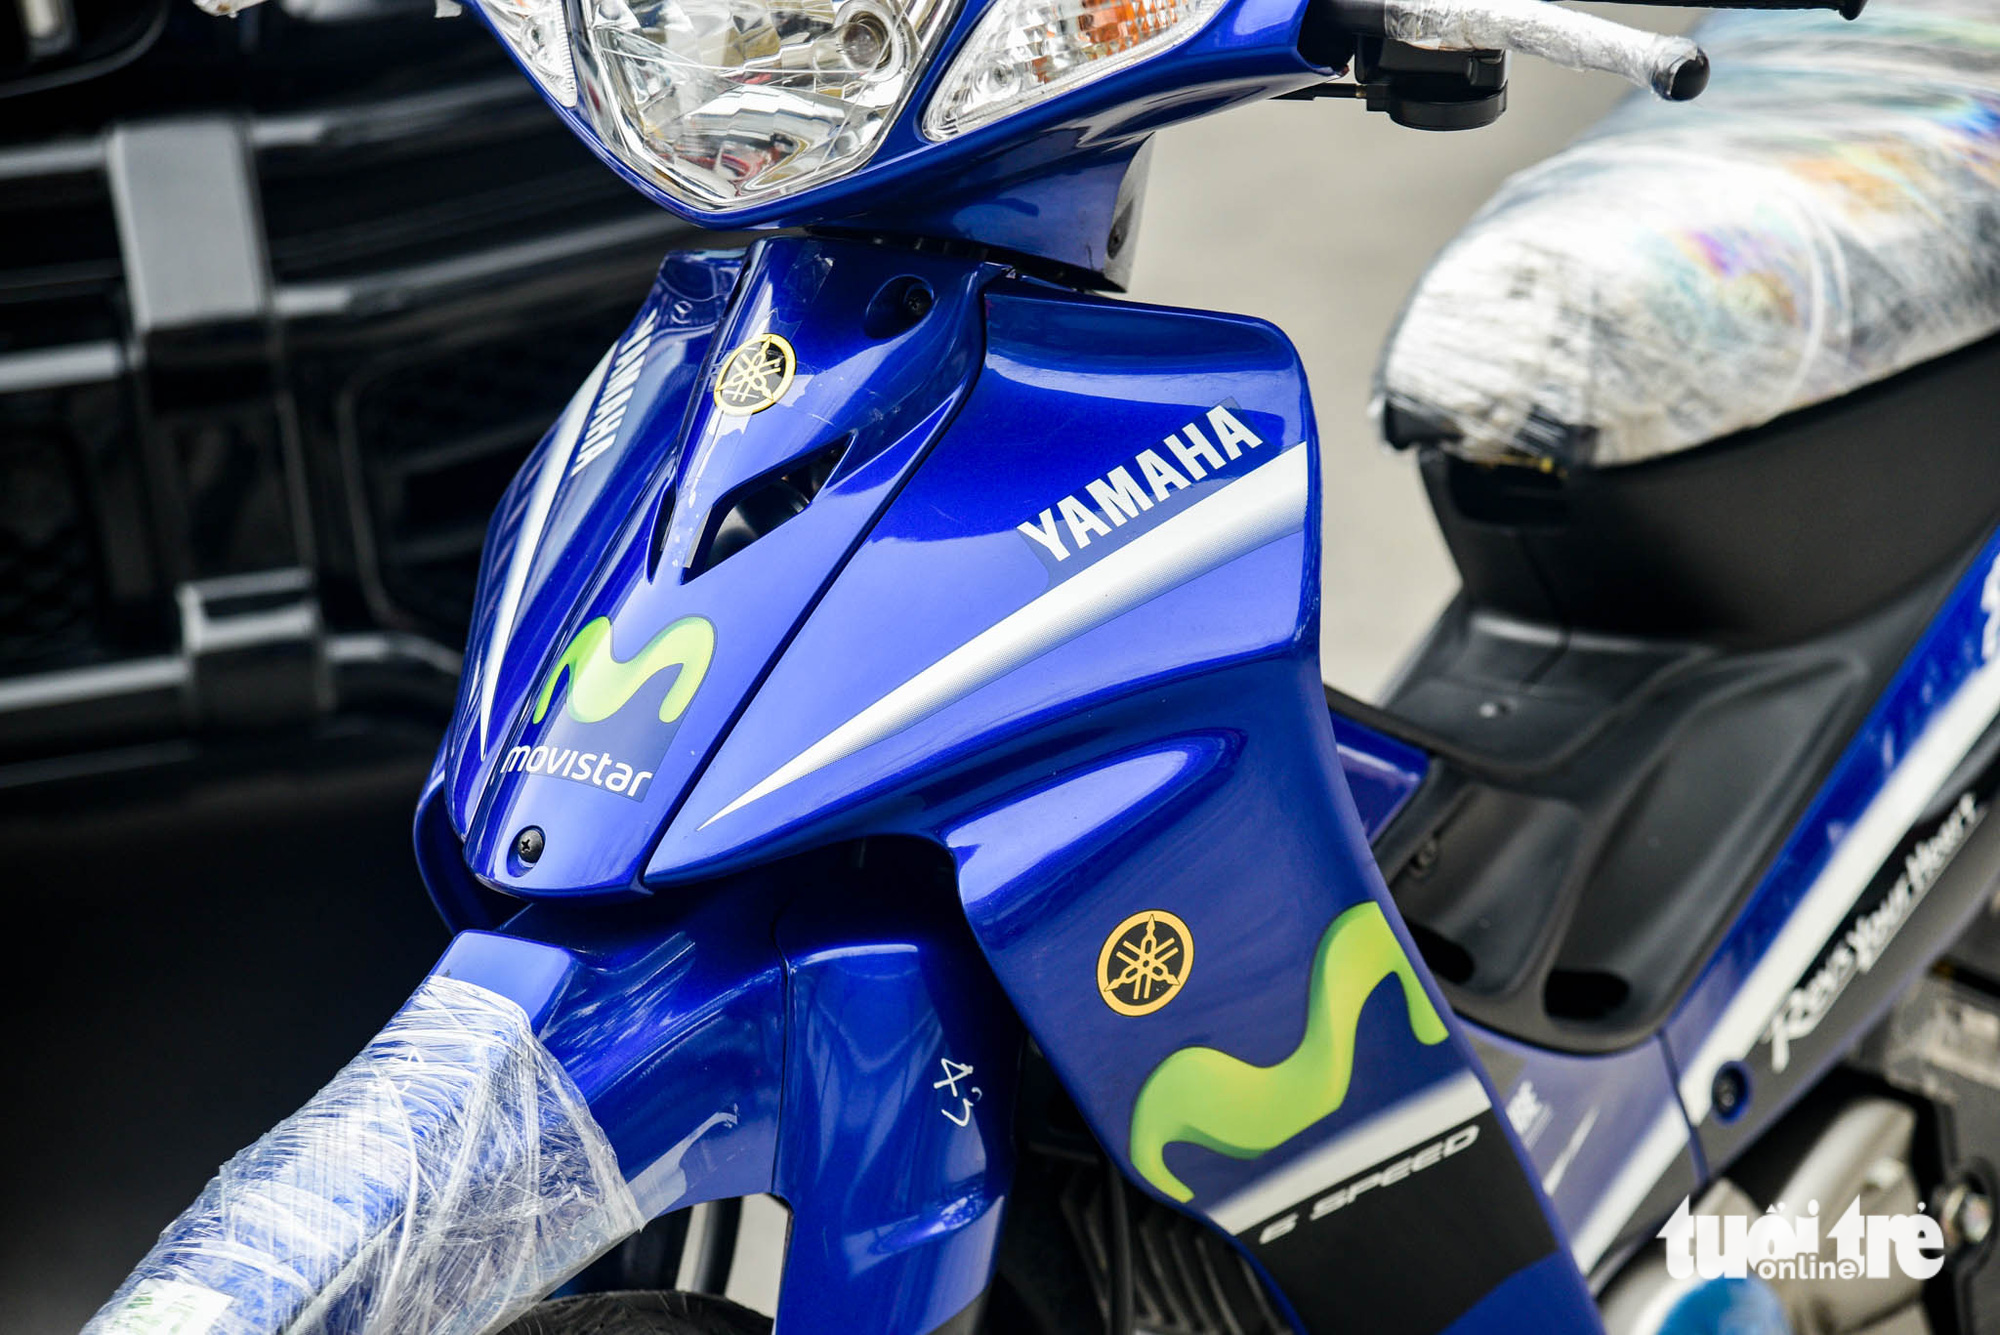 Yamaha 125ZR bản giới hạn giá khoảng 600 triệu đồng tại Hà Nội, dành cho dân chơi thích hàng độc - Ảnh 6.